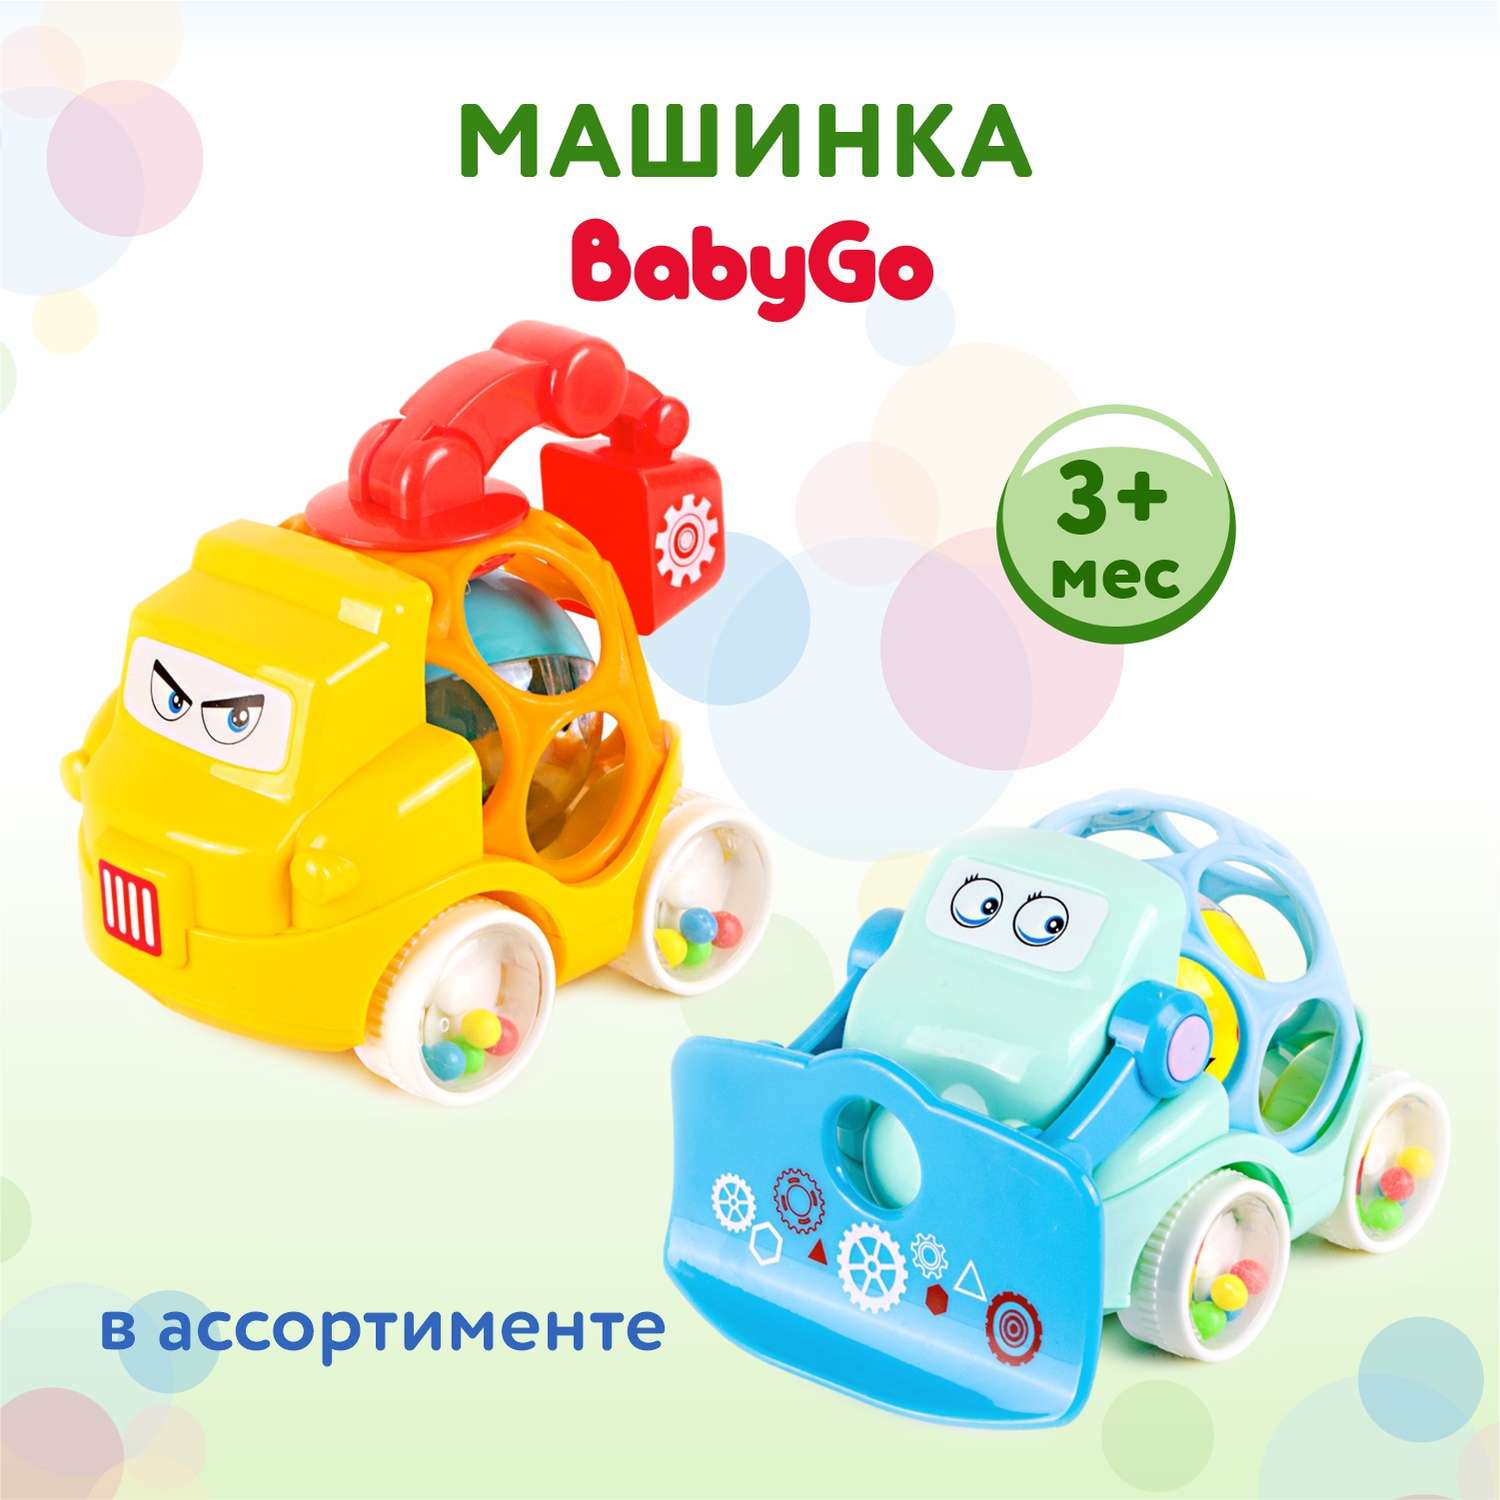 Игрушка BabyGo машинка OTB0574010 в ассортименте - фото 1